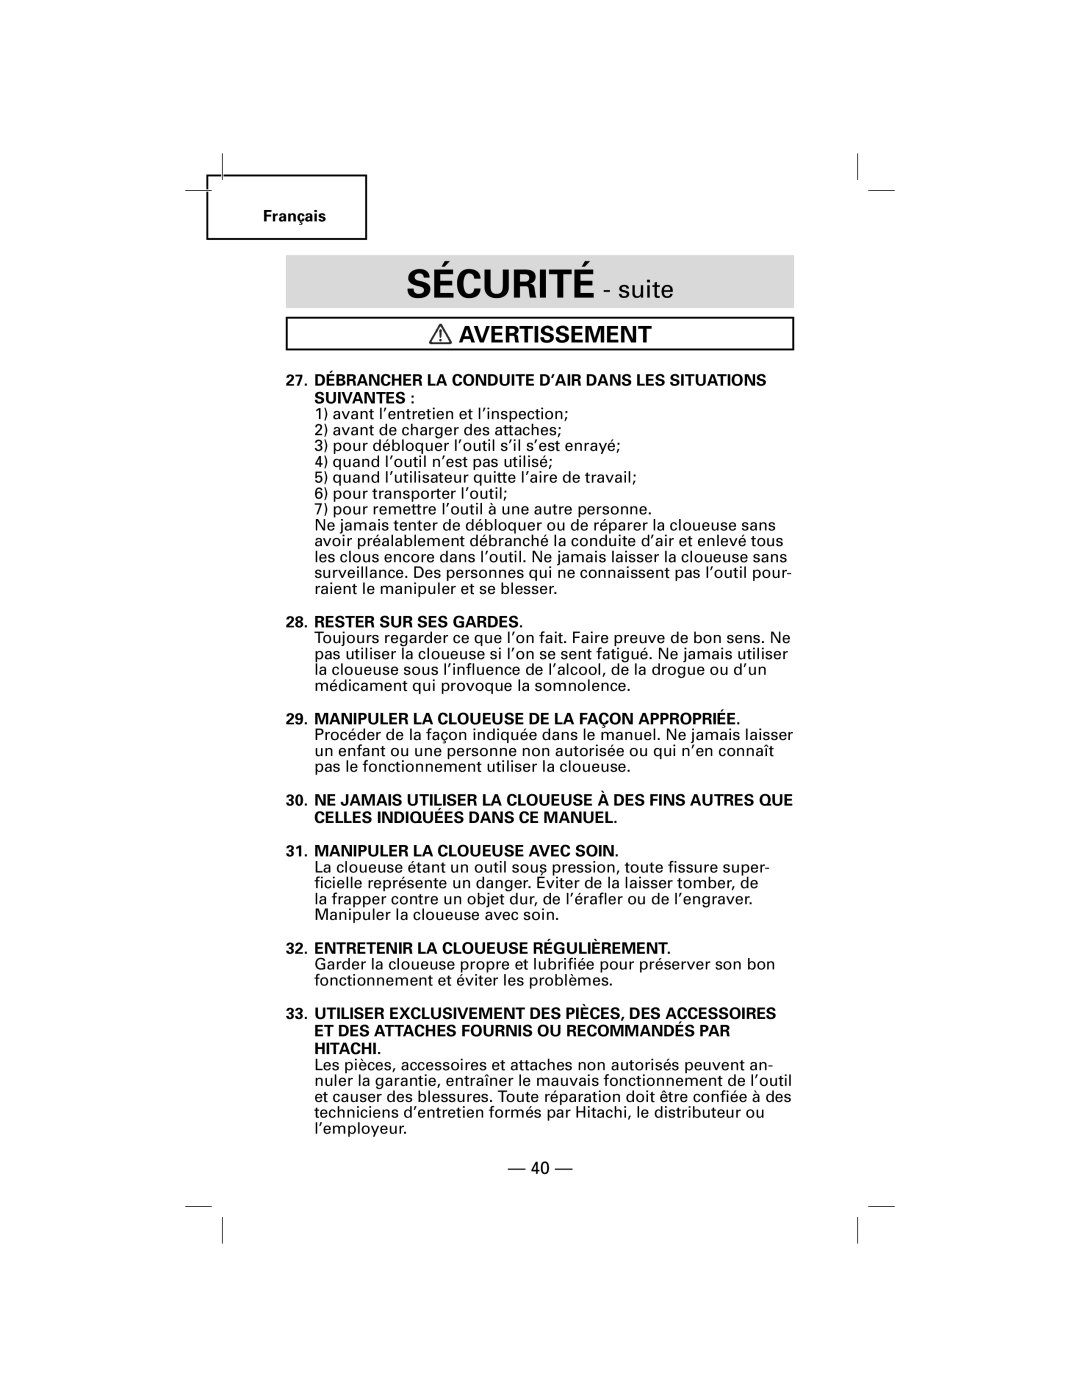 Hitachi NT50AGF manual SÉCURITÉ - suite, Avertissement 